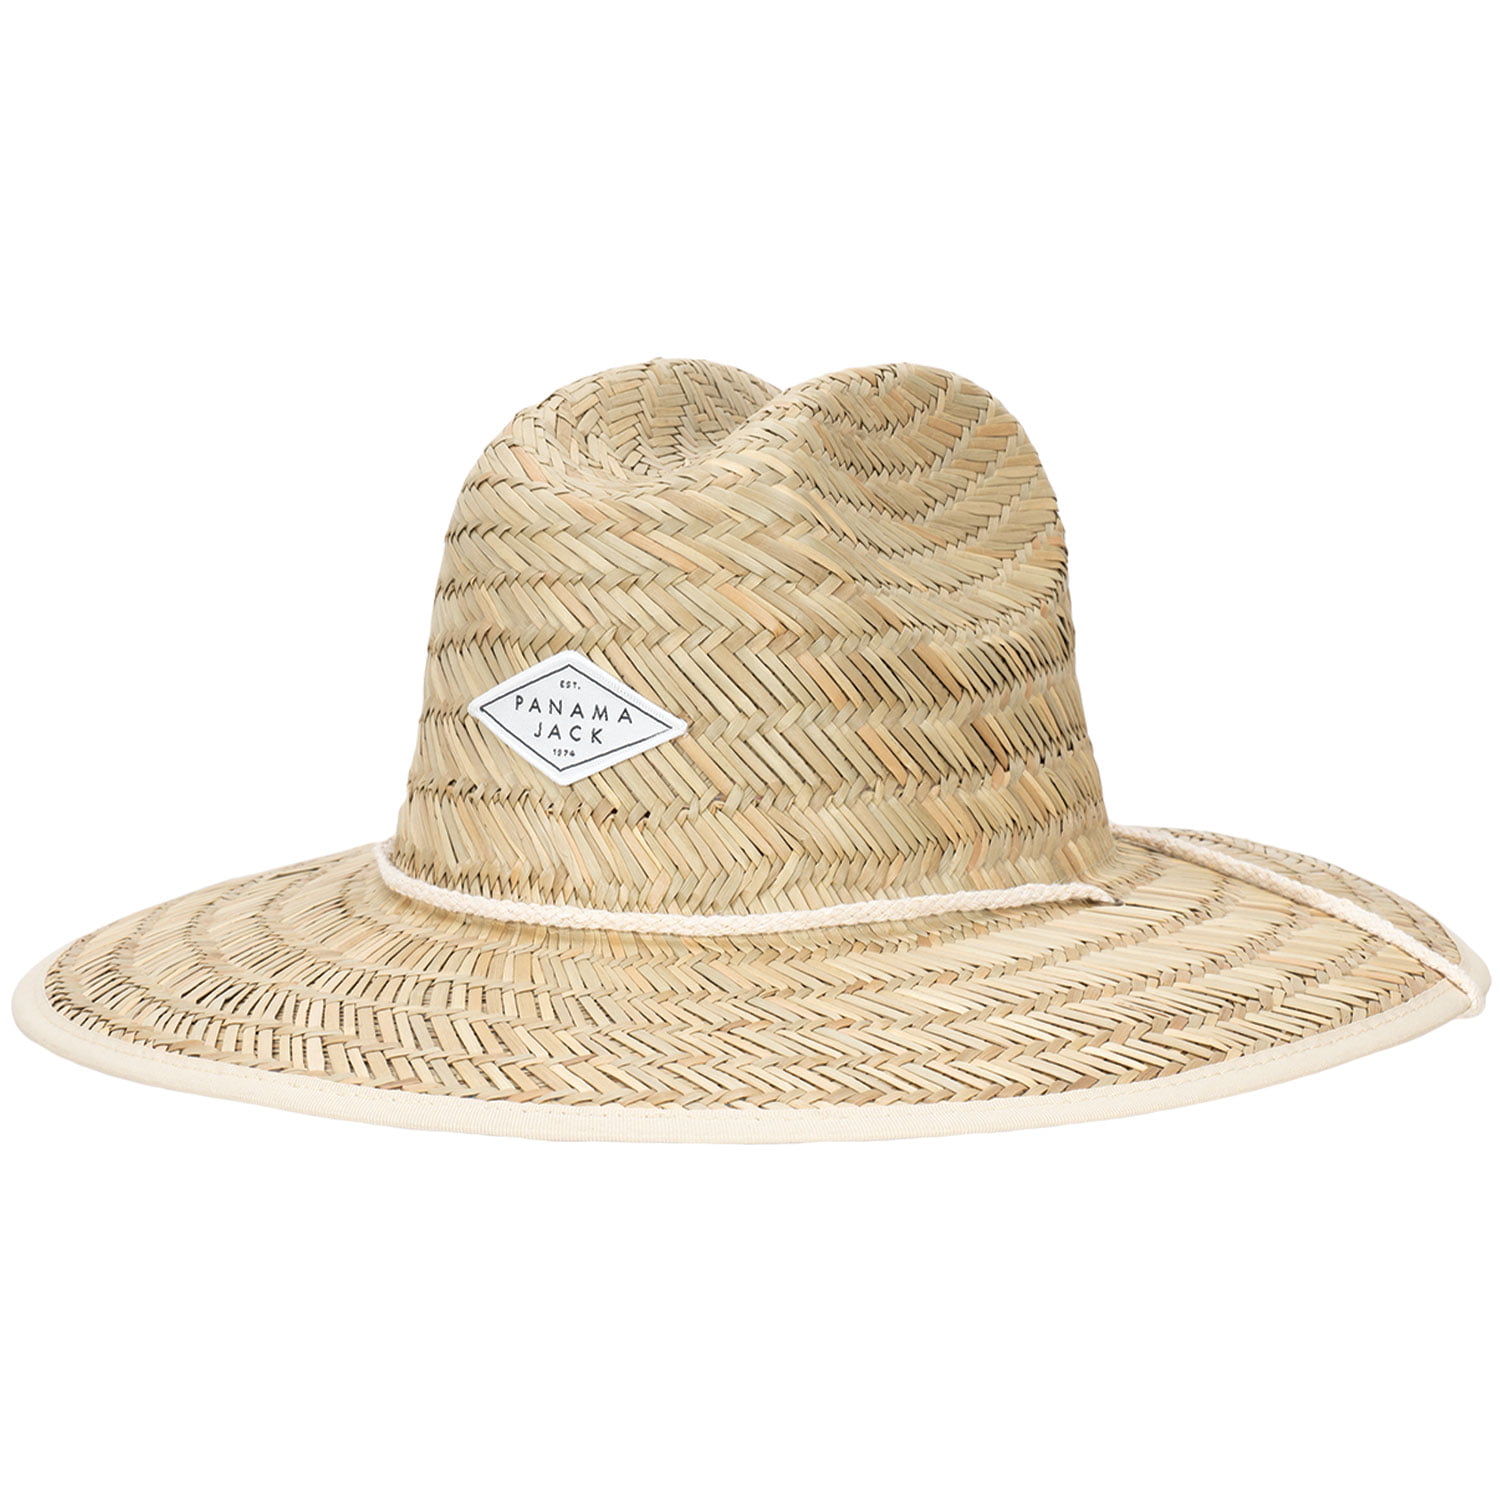 Panama Jack Women's Sun Hat - Lifeguard, Hand Woven Straw